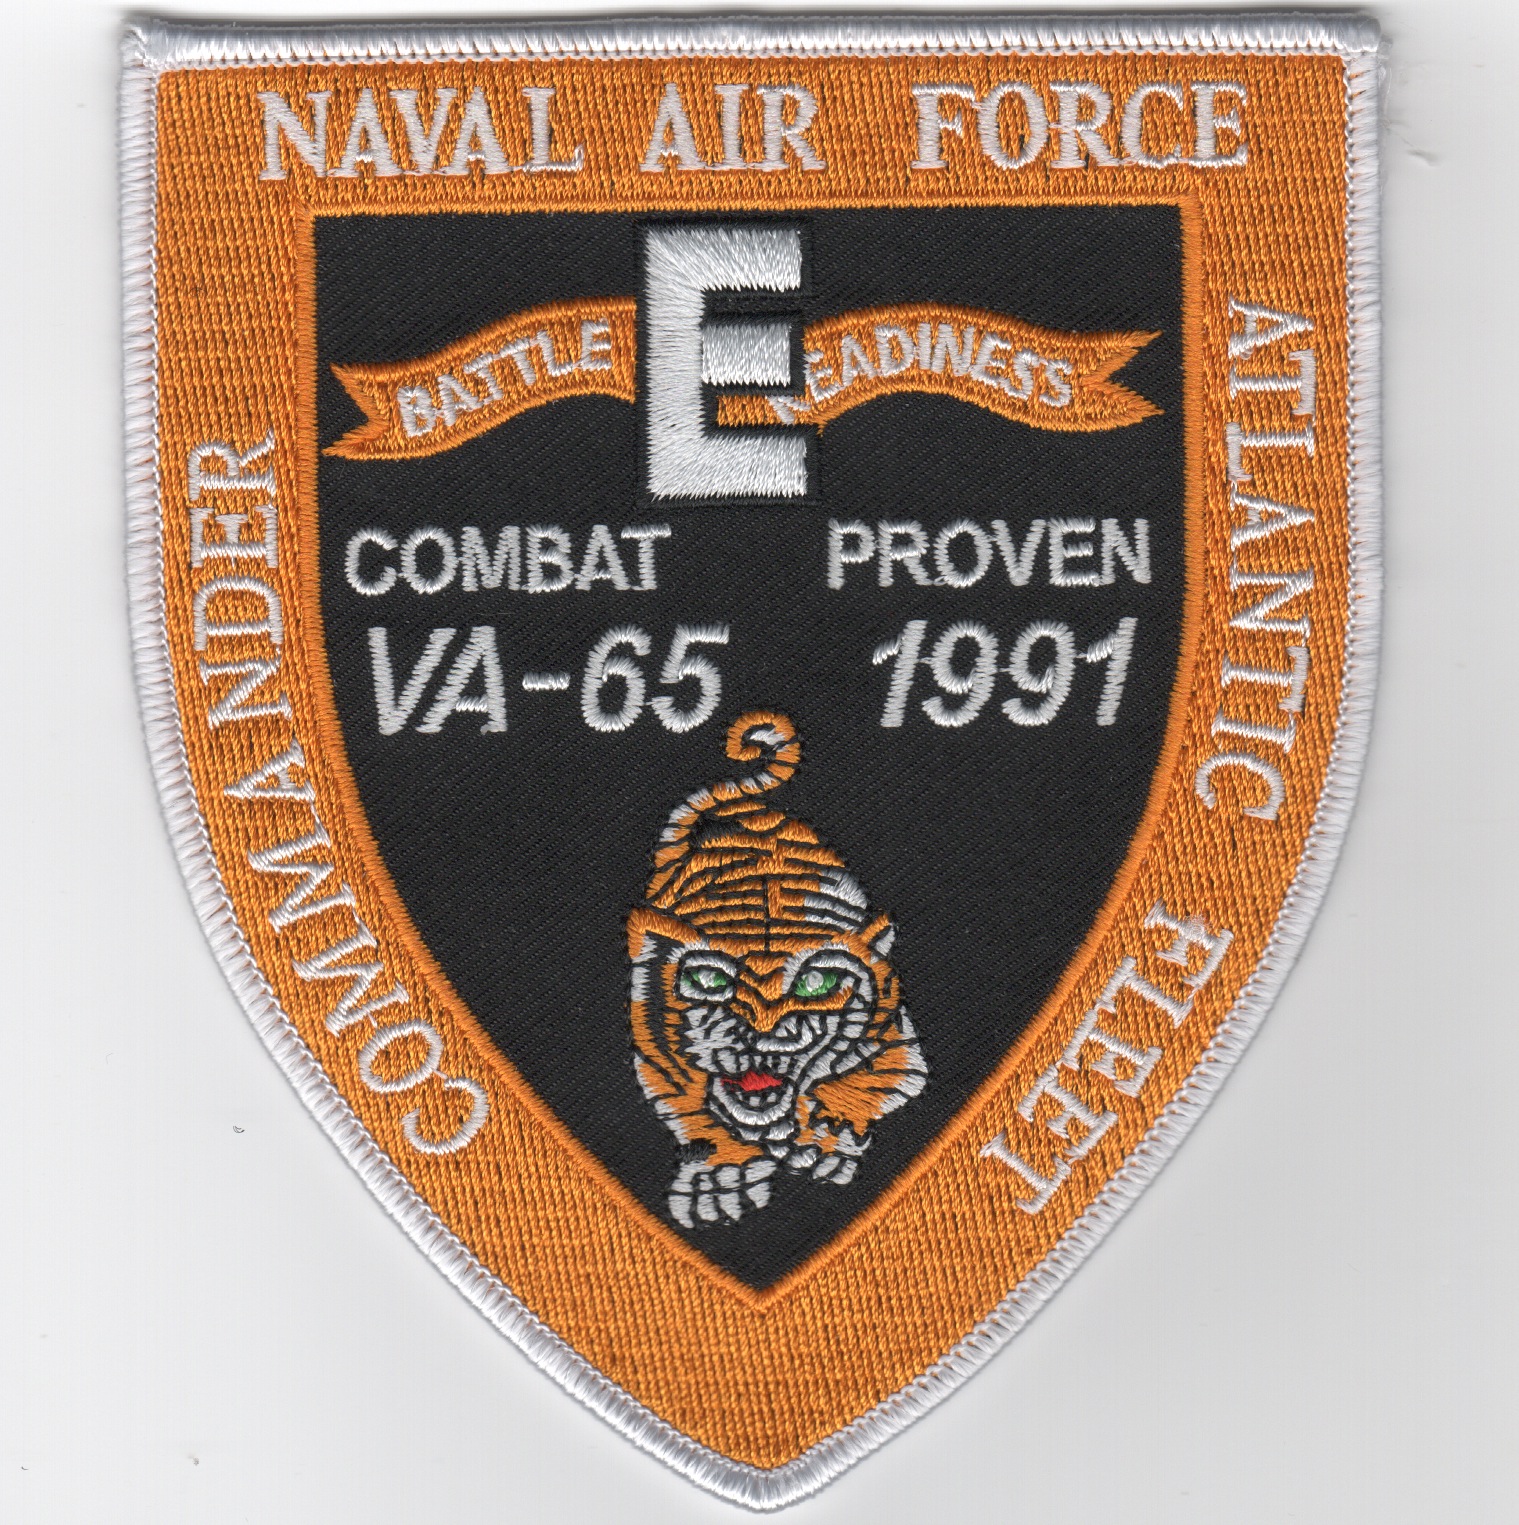 VA-65 1991 Battle 'E' Shield (Repro)